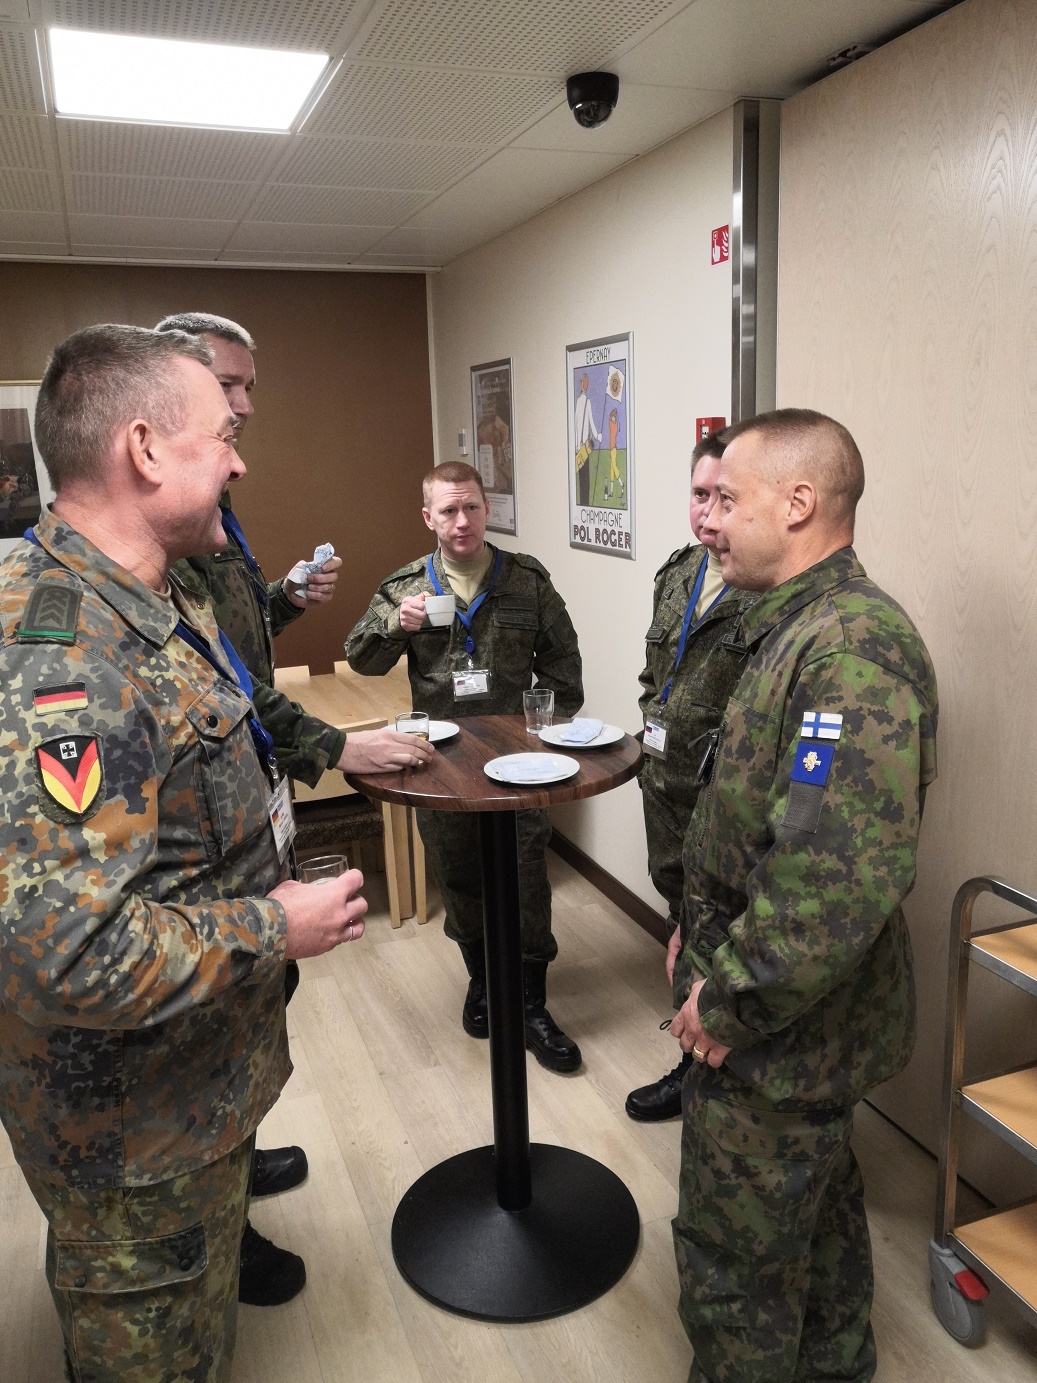 Kuvassa majuri Toivanen seisoo ja keskustelee yhdessä ulkomaalaisten sotilaiden kanssa. Kuvassa on suomalaisten sotilaiden lisäksi saksalainen ja kaksi venäläistä sotilasta.